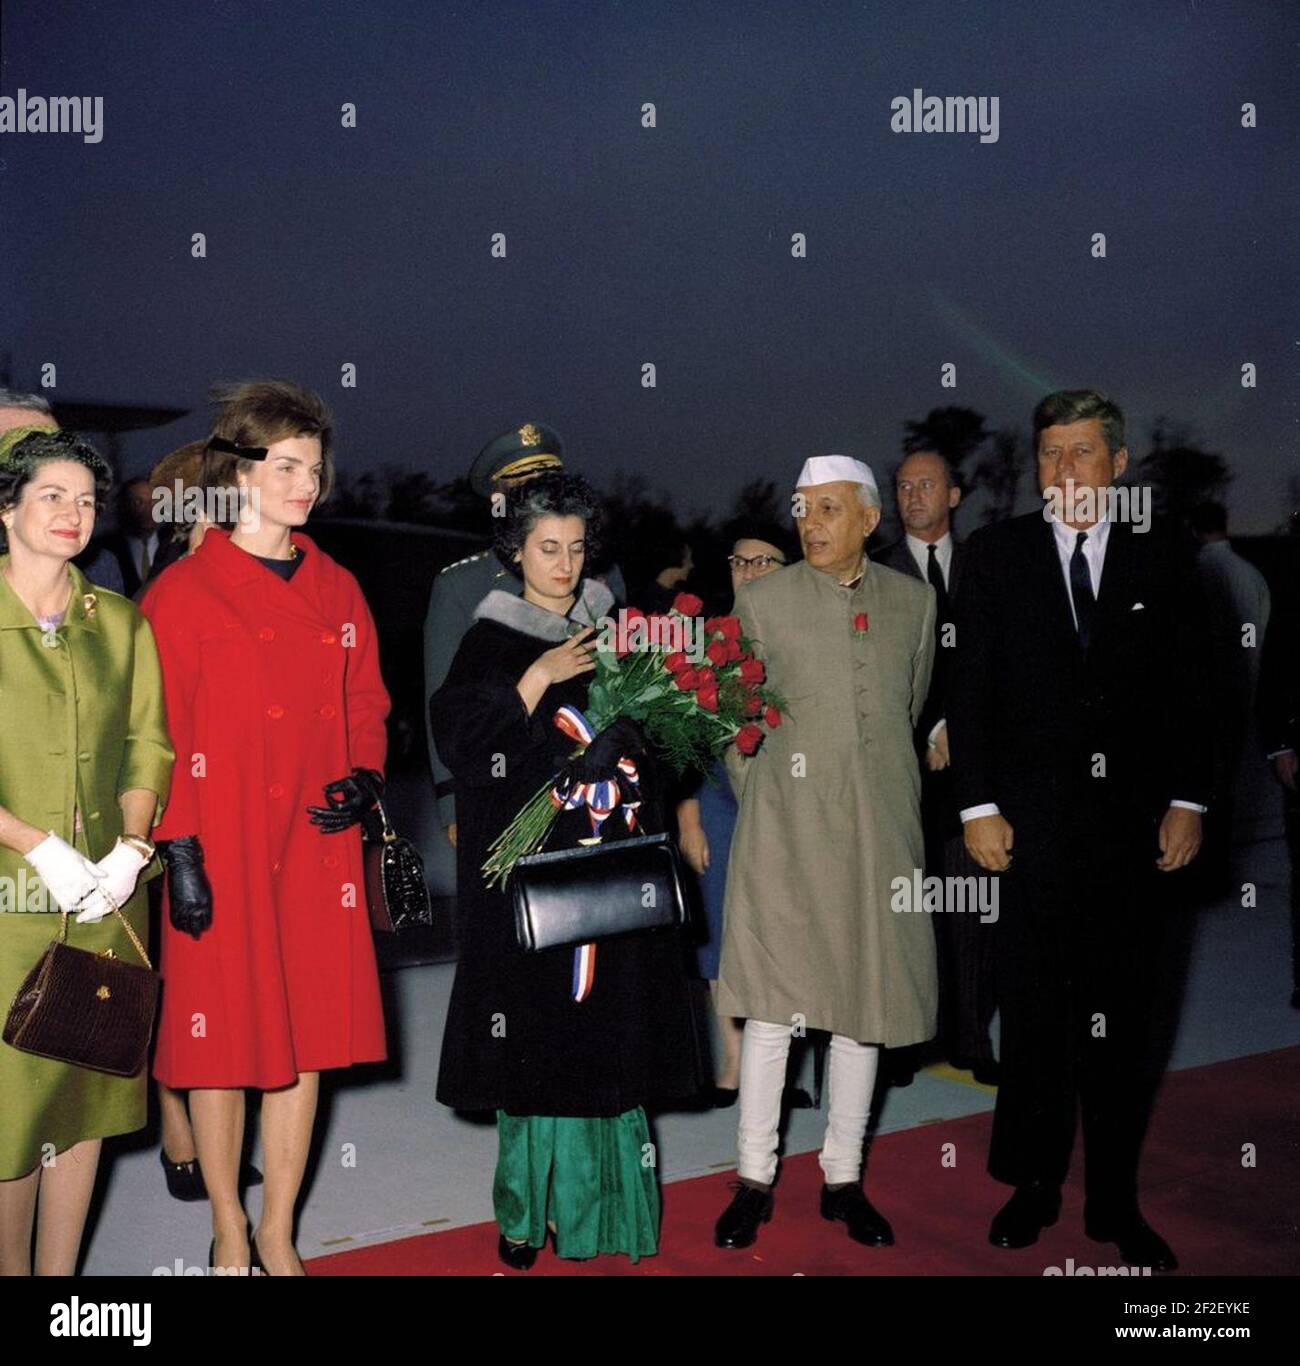 Le président John F. Kennedy, la première dame Jacqueline Kennedy, le premier ministre de l'Inde Jawaharlal Nehru et d'autres cérémonies d'arrivée (couleur). Banque D'Images